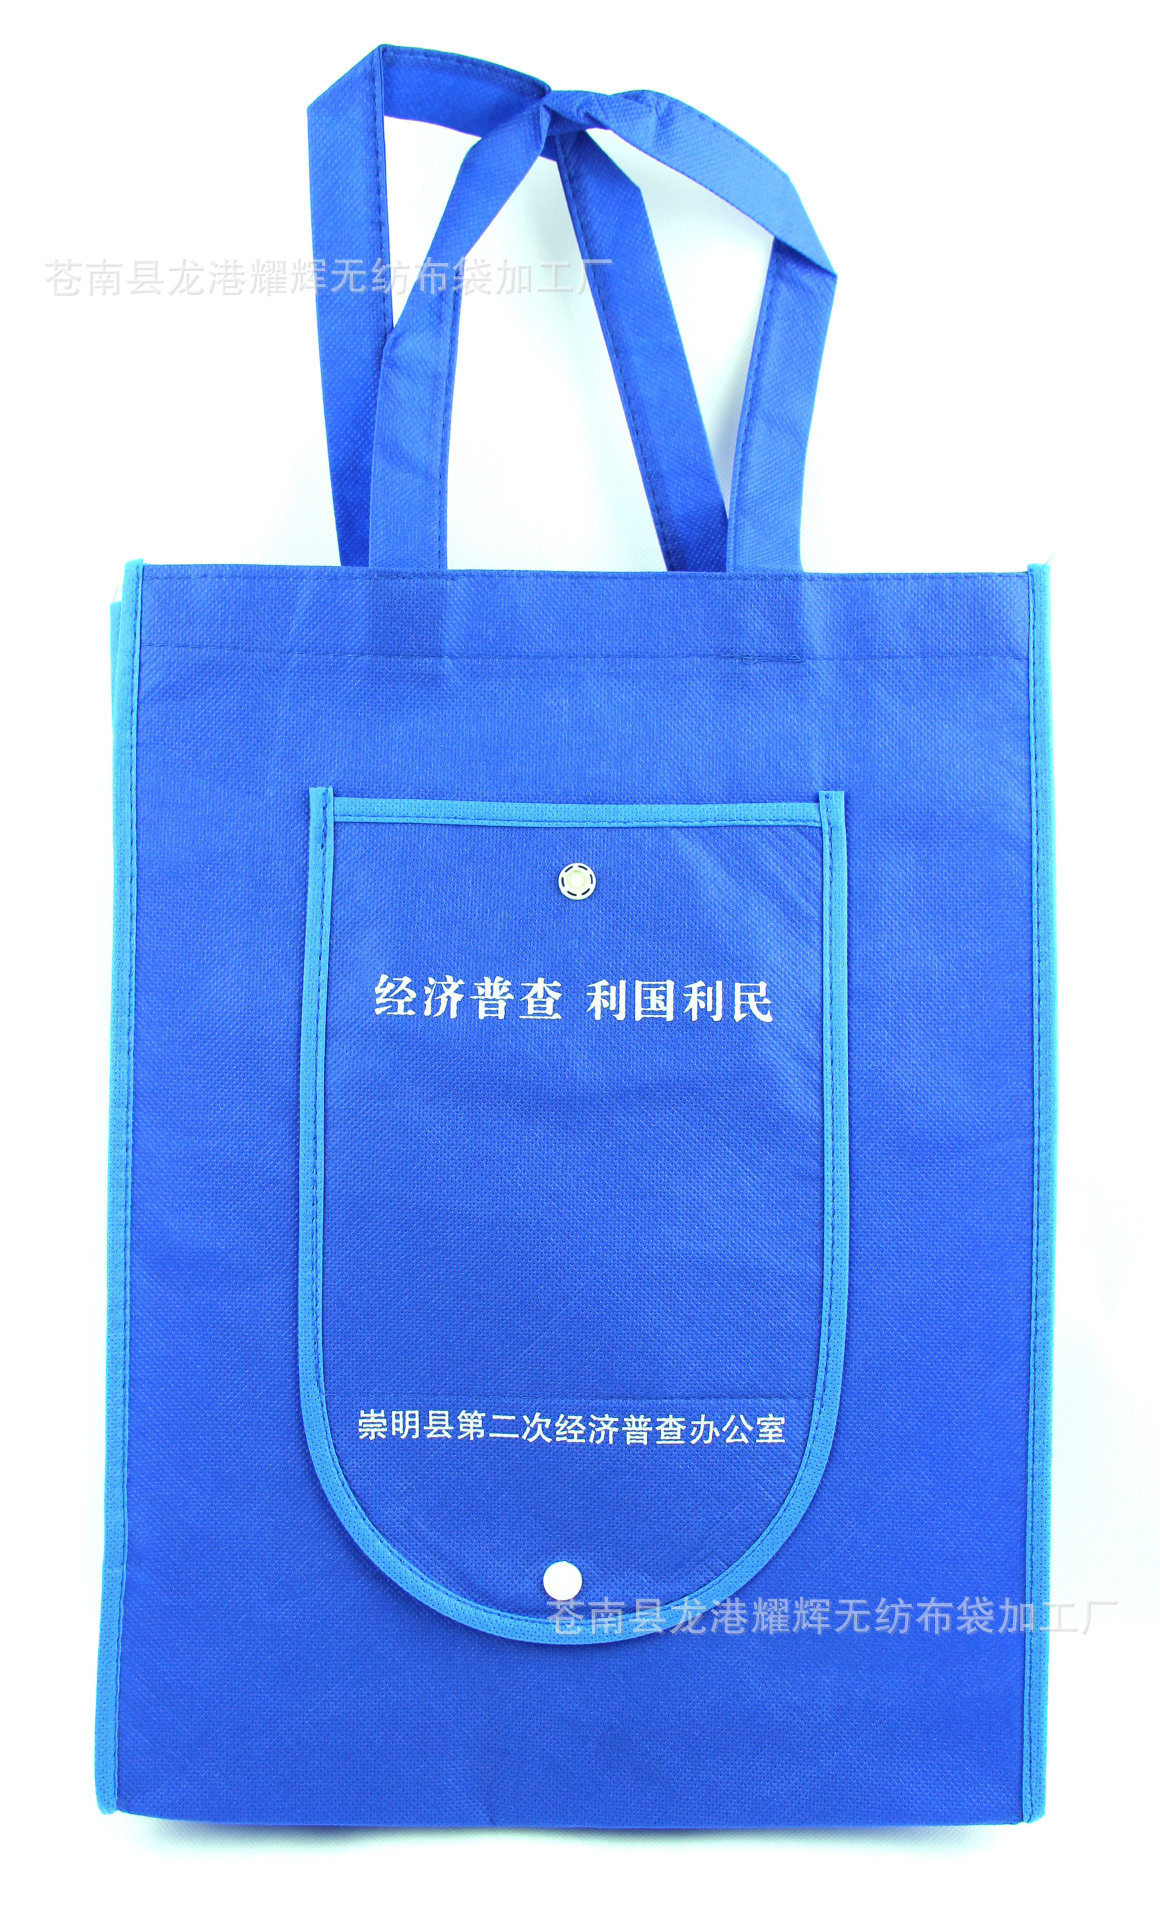 【本公司专业生产折叠袋 保温袋 环保袋 背心袋